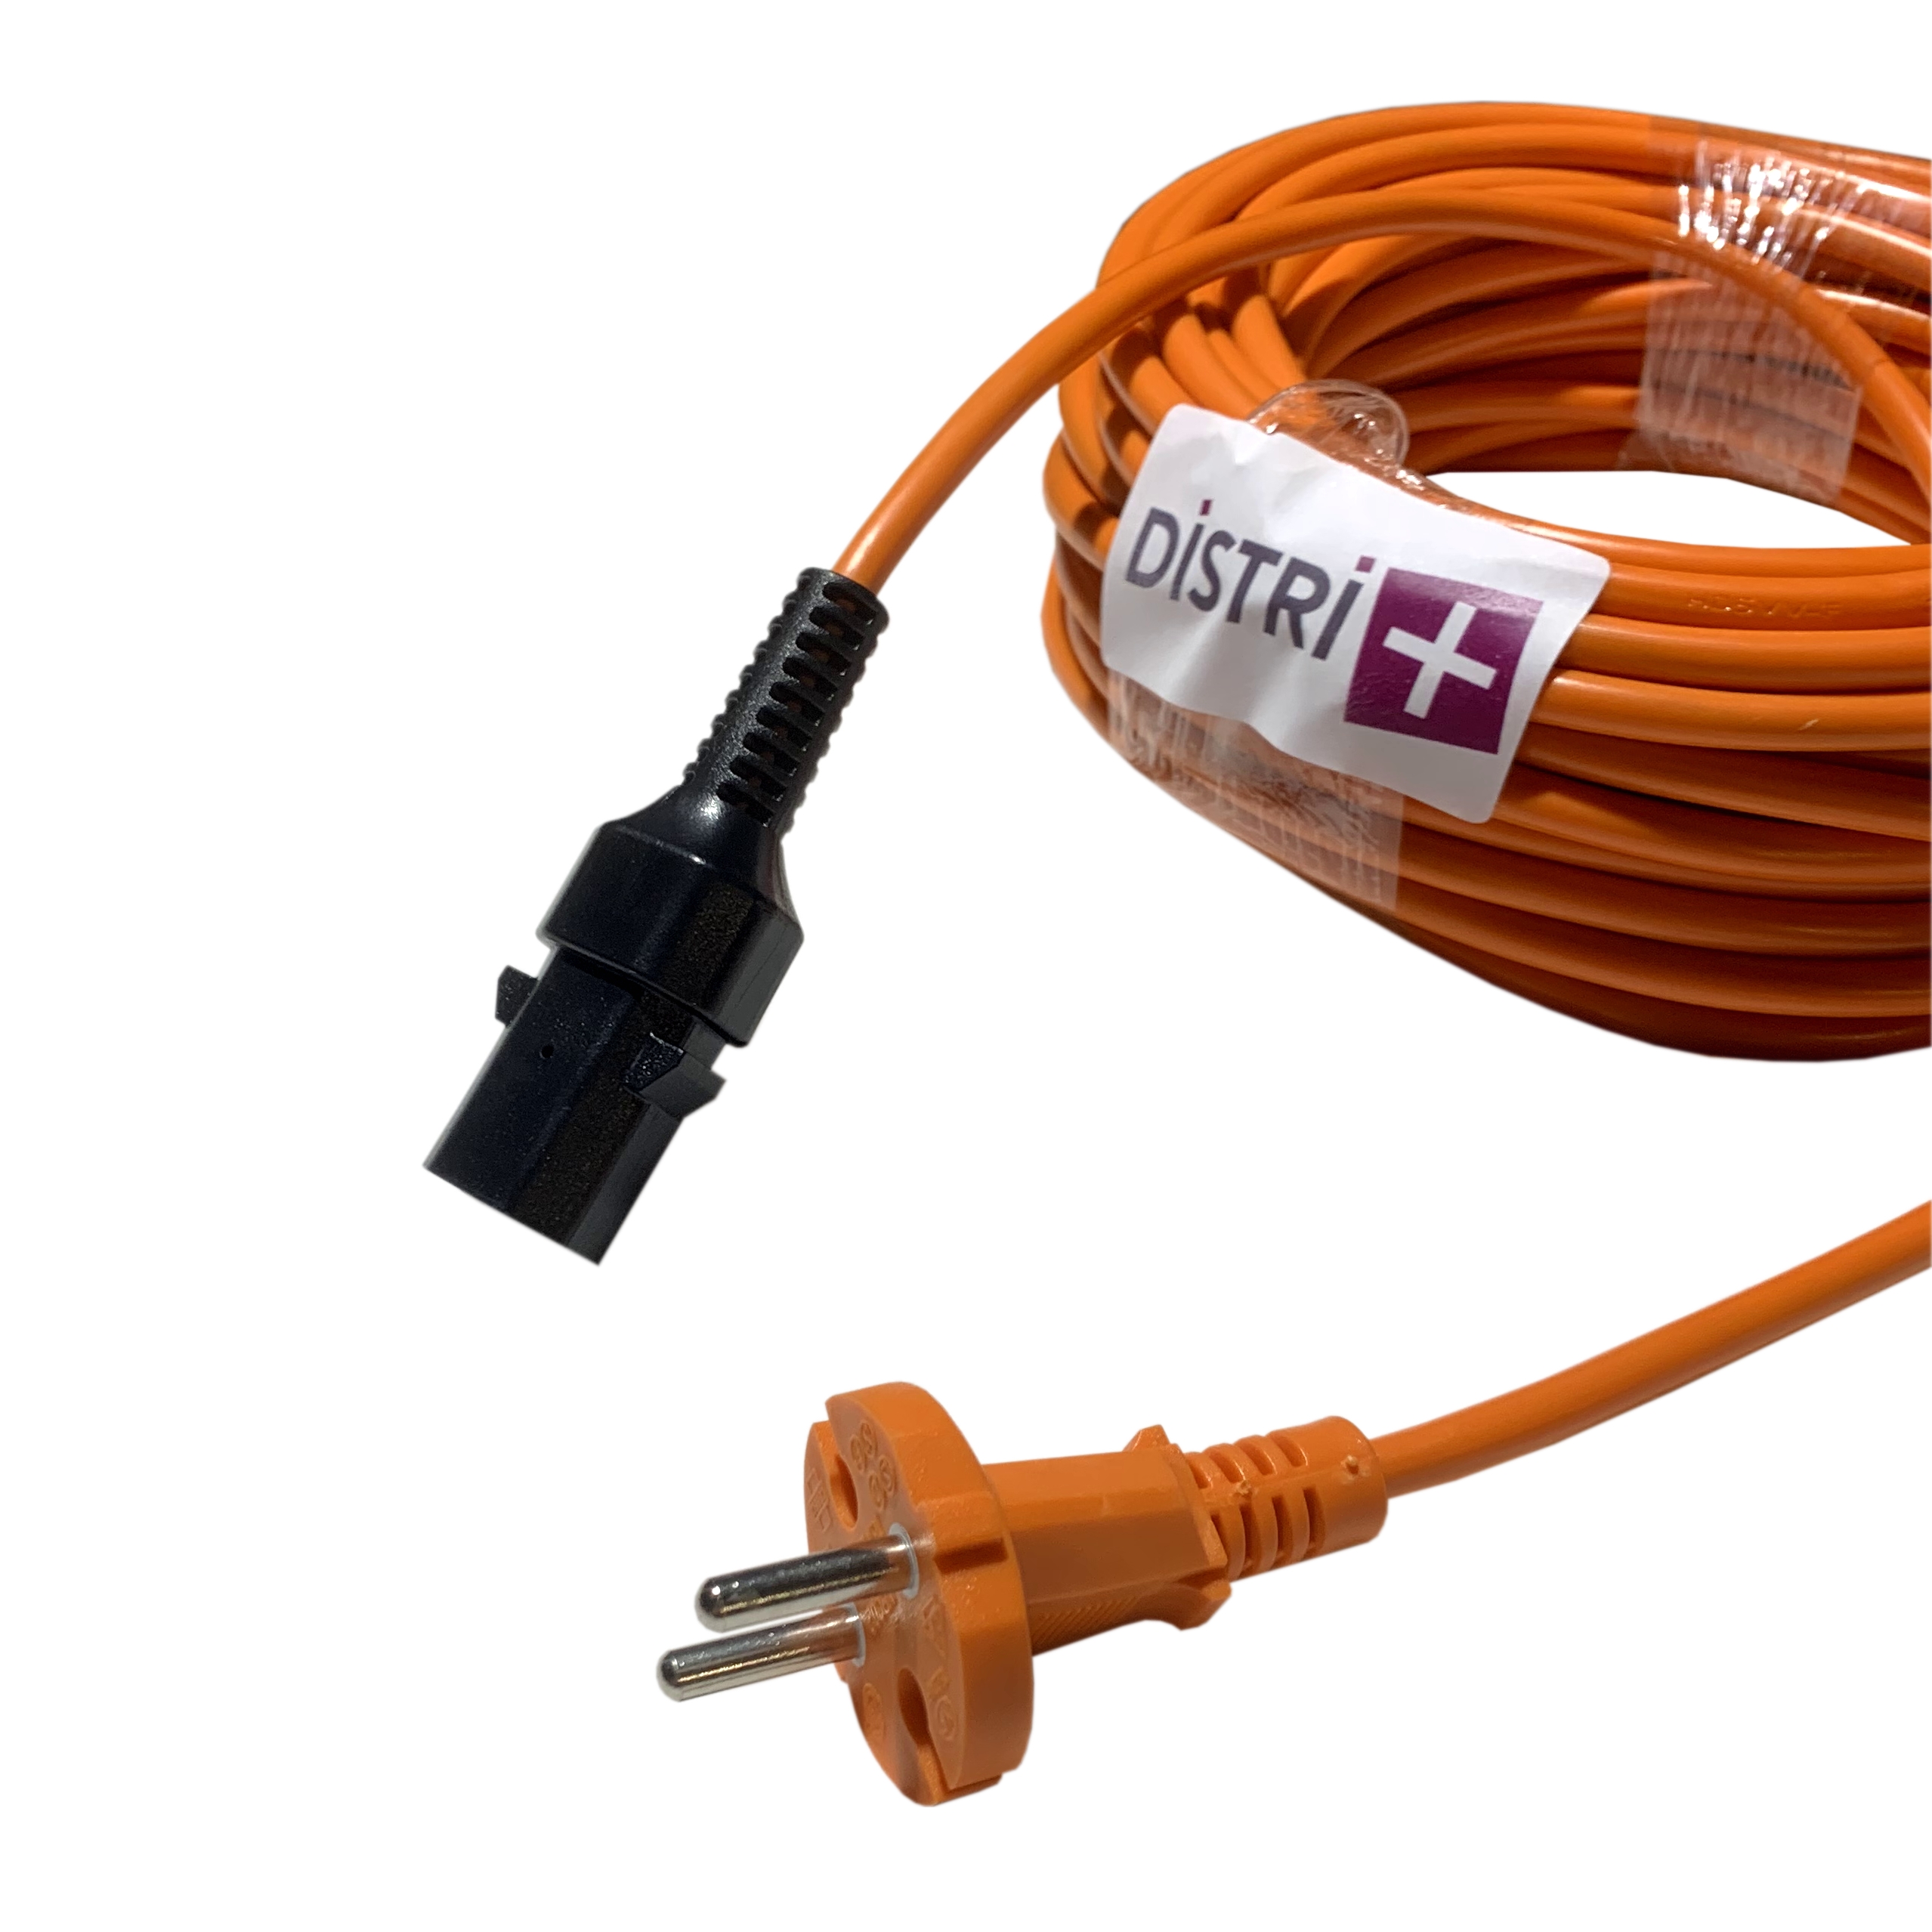 Câble d'alimentation compatible pour aspirateur Nilfisk VP300, VP600, SALTIX 10, 107402901, 107402676 - TENNANT V6... Longueur 15m
